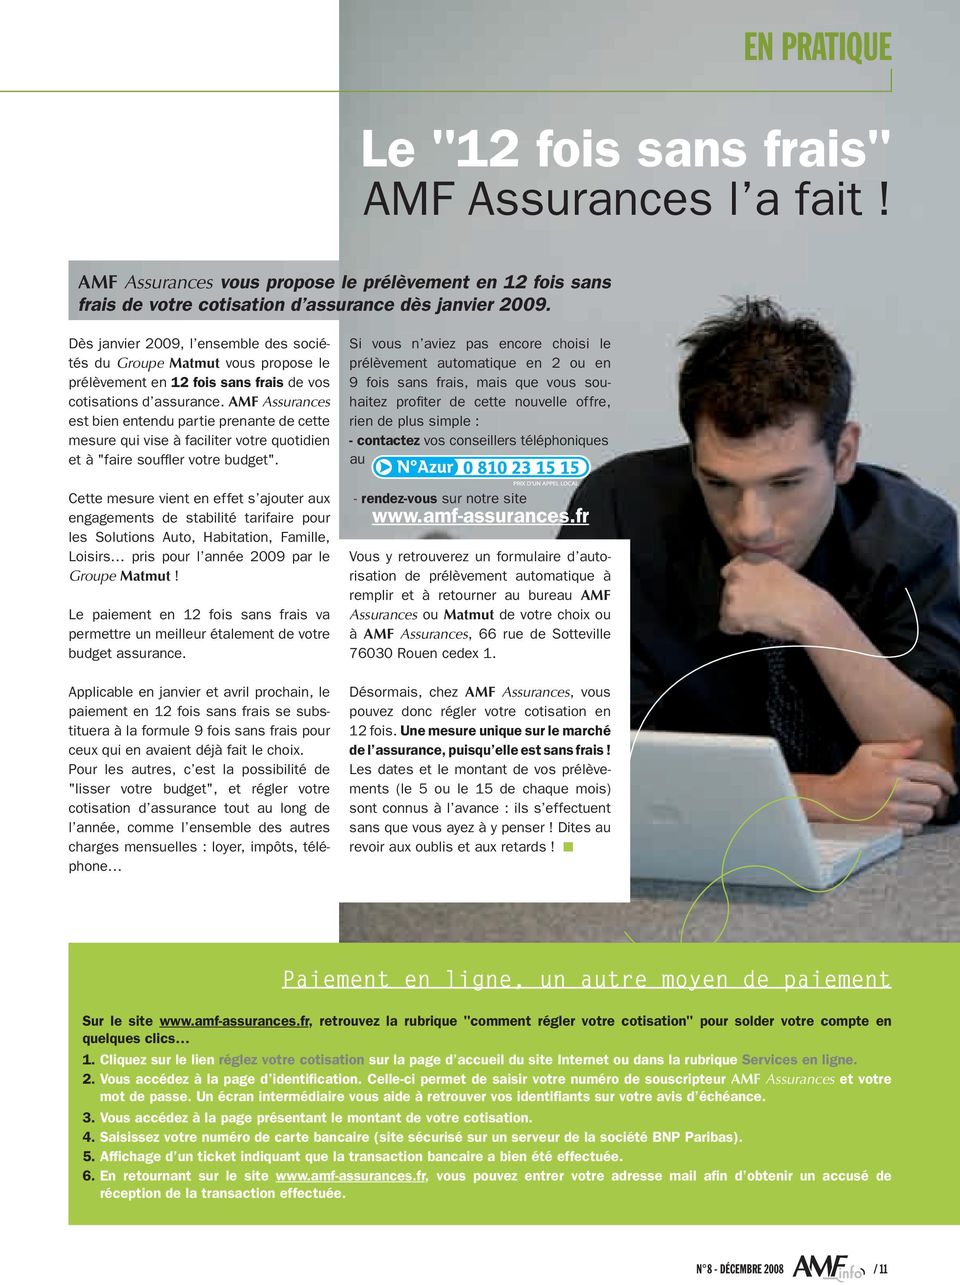 AMF Assurances est bien entendu partie prenante de cette mesure qui vise à faciliter votre quotidien et à "faire souffler votre budget".